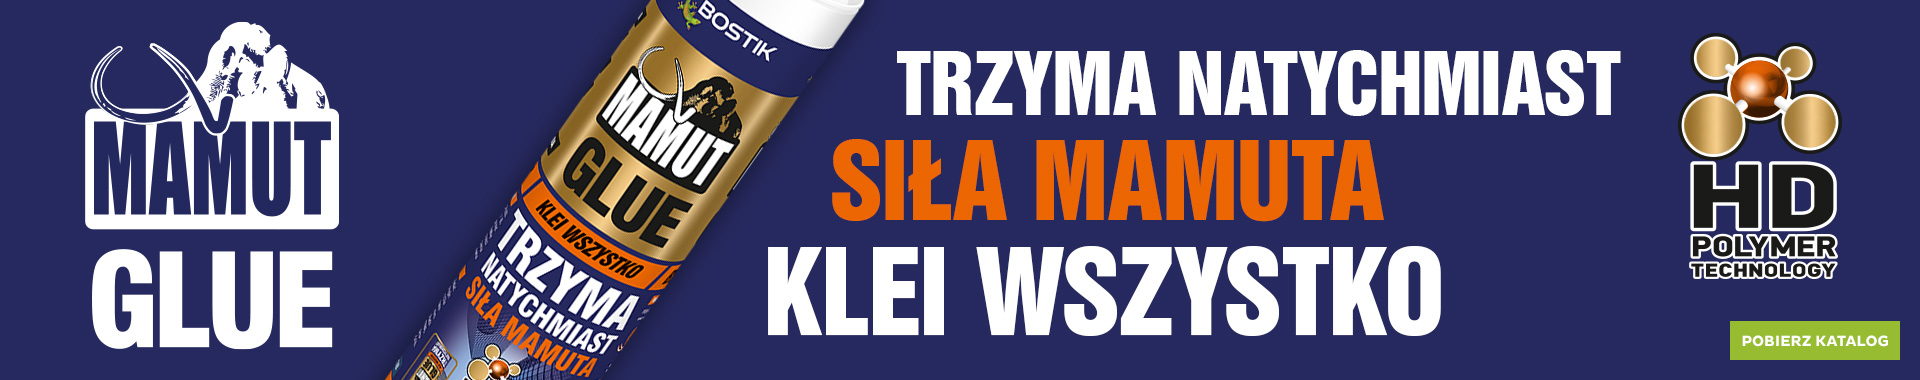 Bostik DIY Poland Mamut range banner 